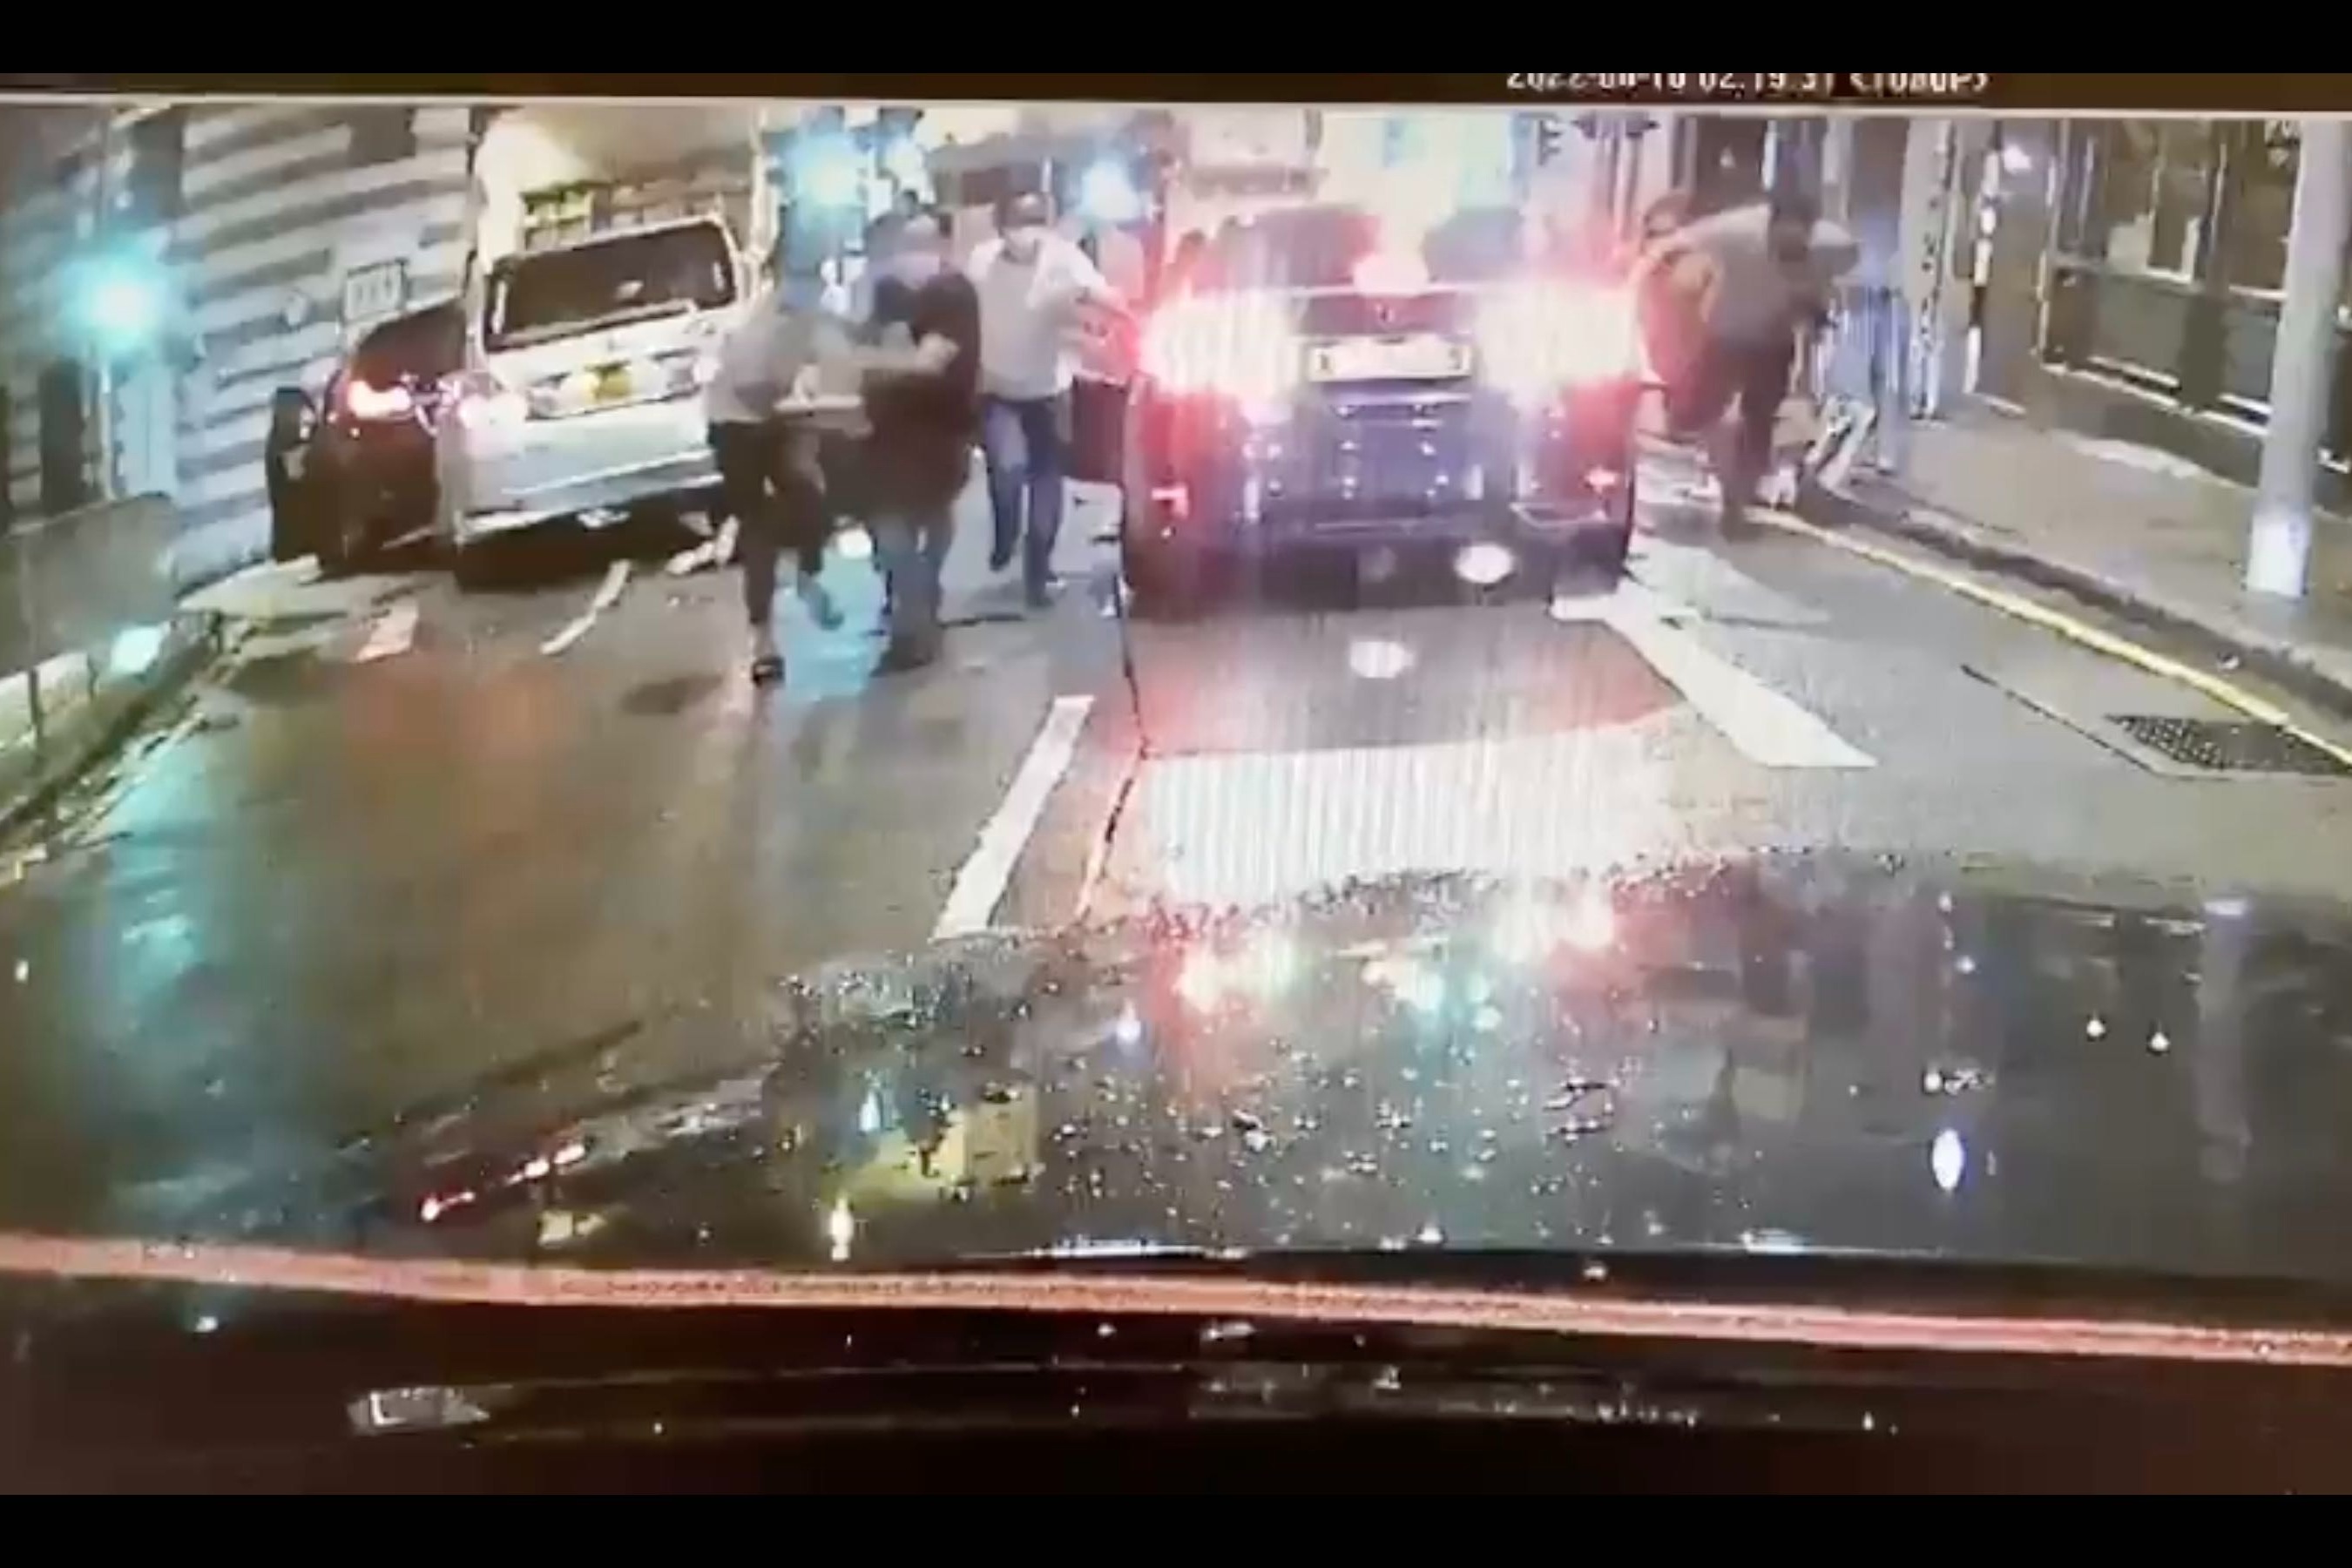 雲咸街撞車斬人槍擊釀3傷 警暫拘4人 涉及兩幫派鬥爭